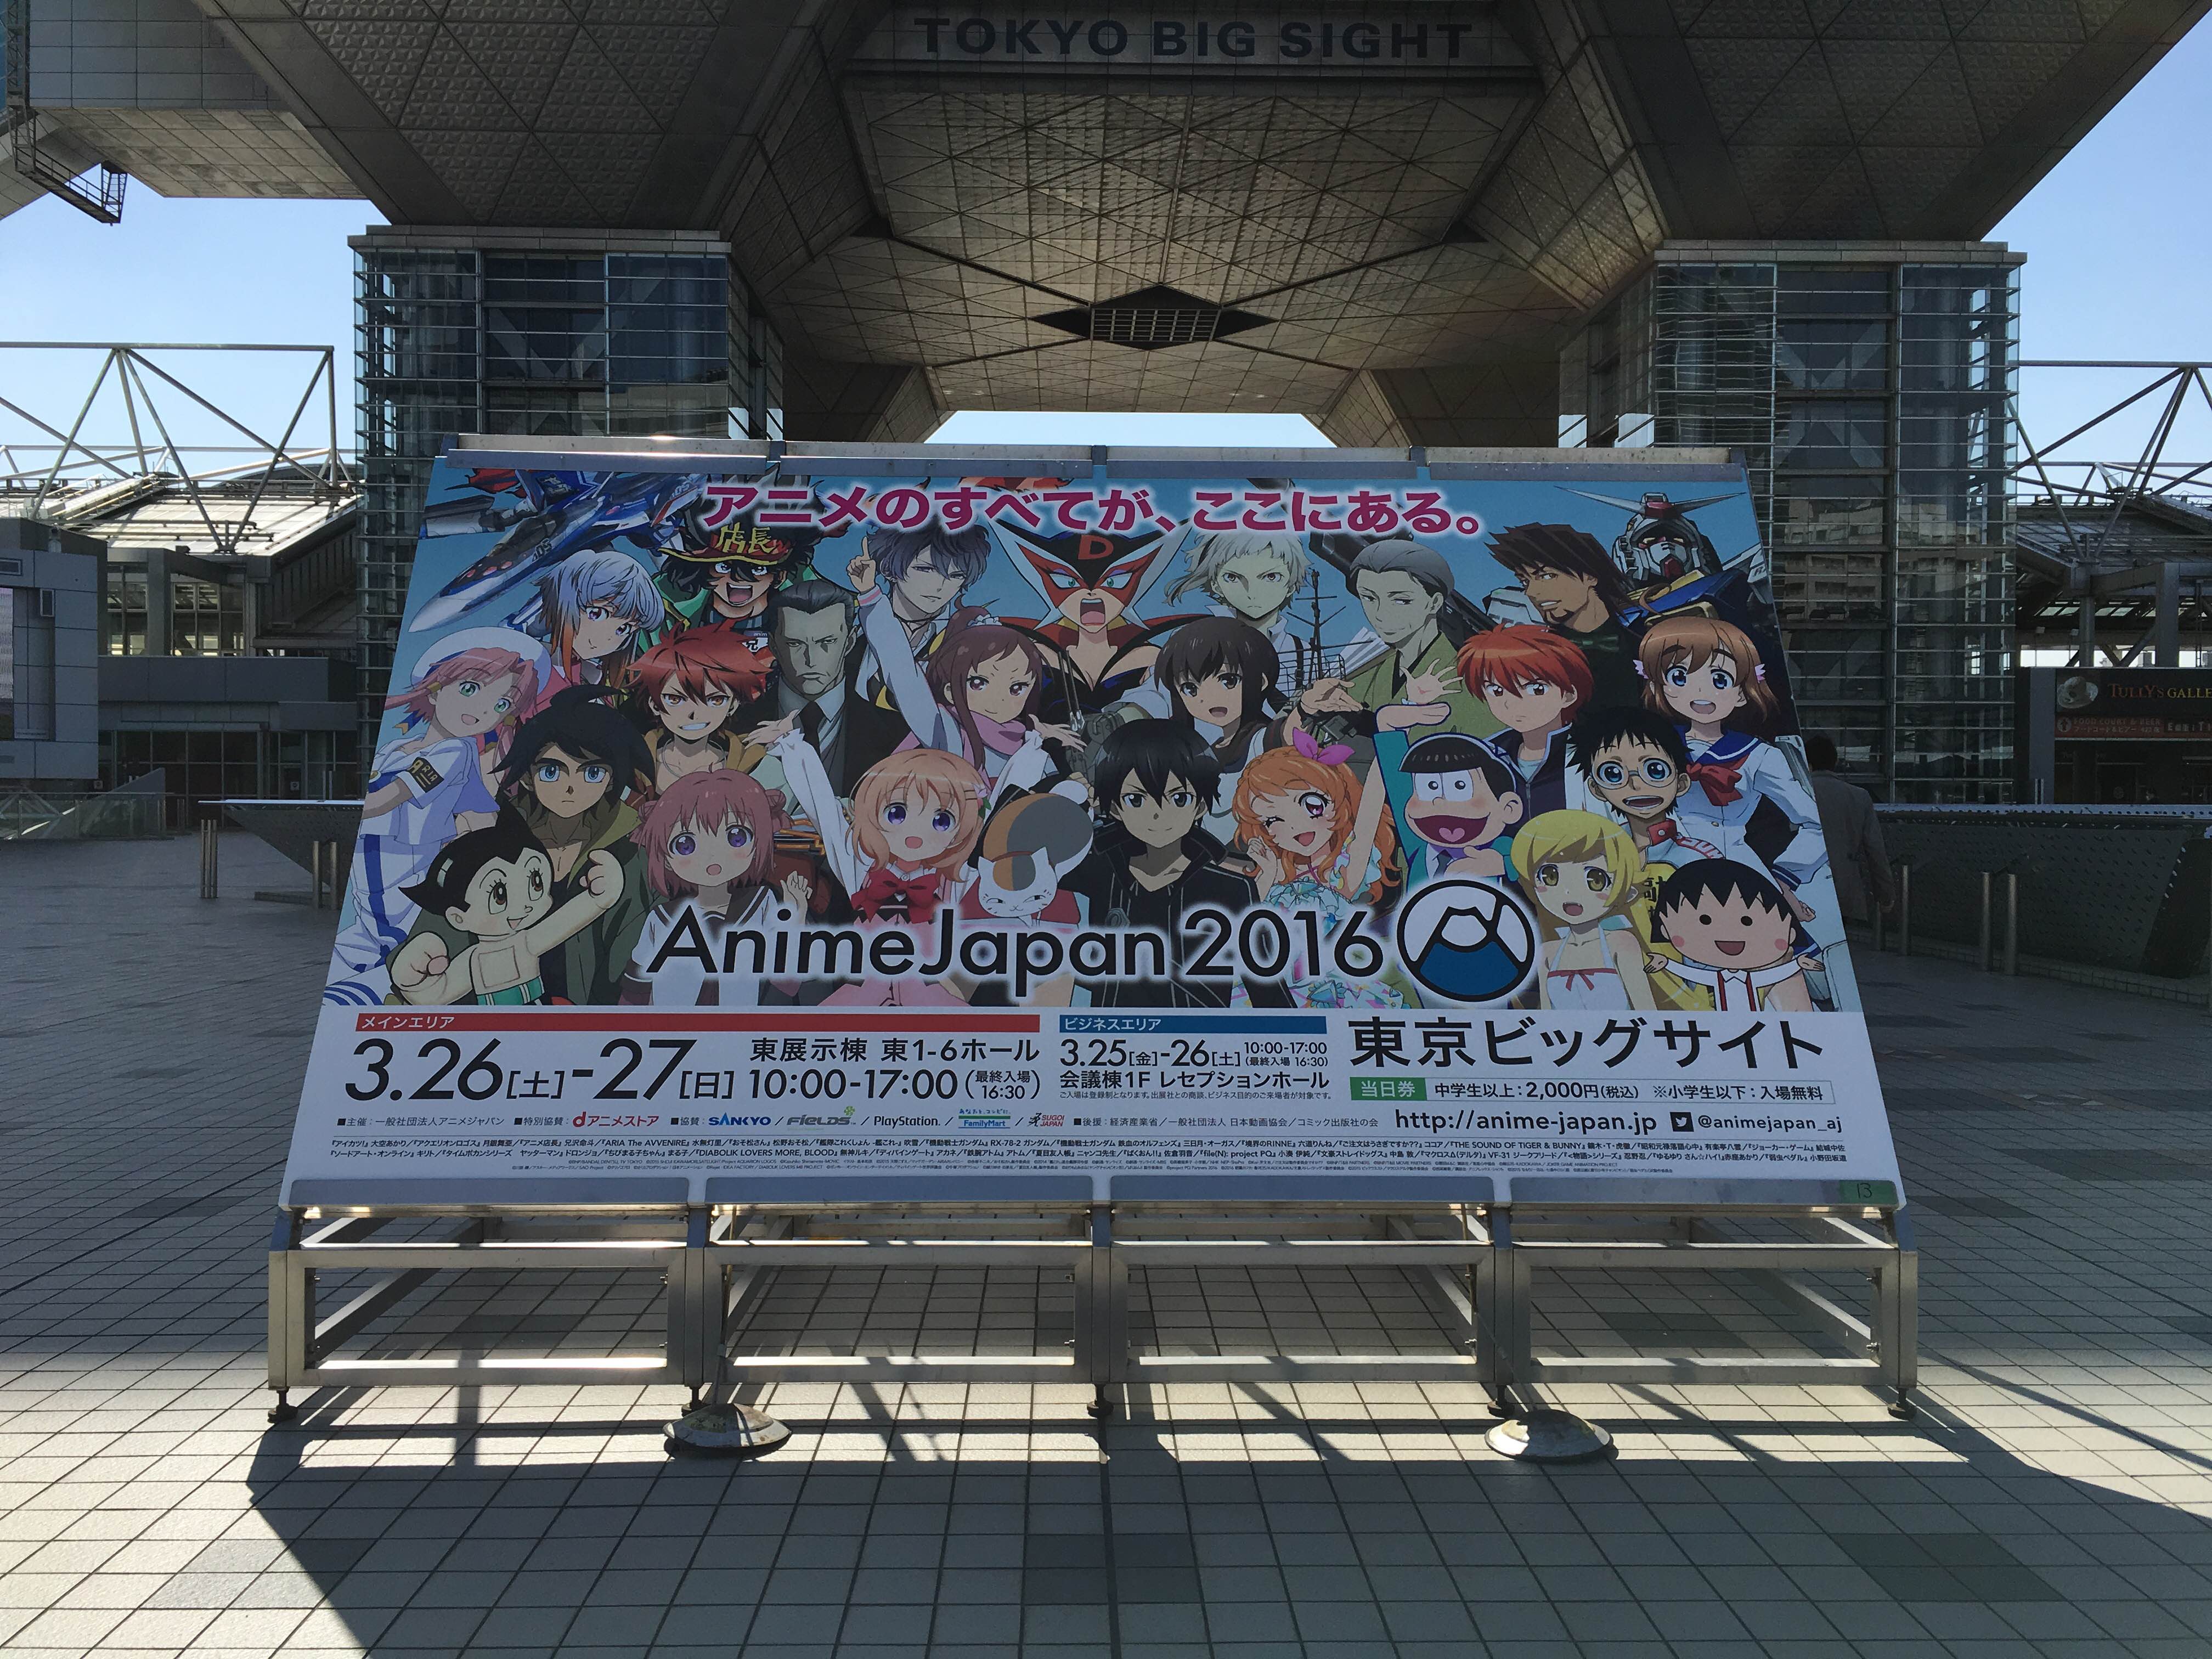 世界最大級のアニメイベント Animejapan 2016 が本日開幕 出展者総数は18 増の174社と過去最大に Social Game Info